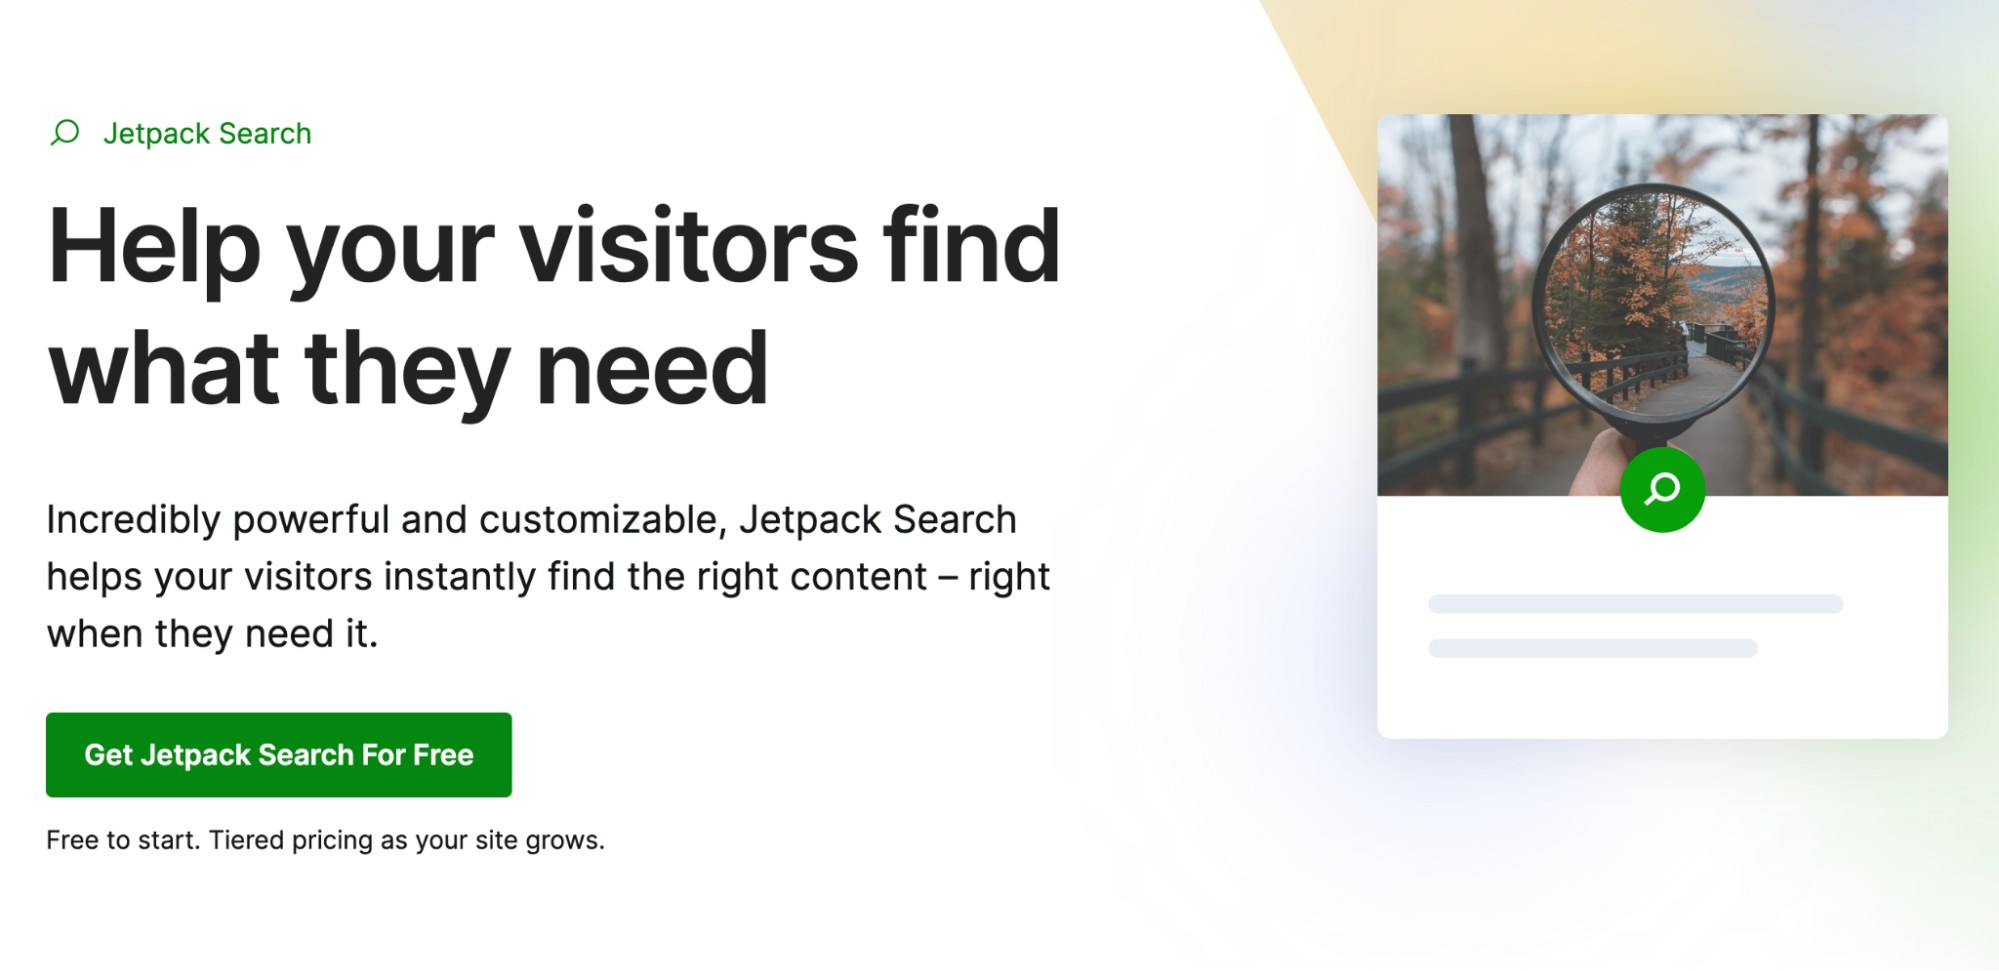 Jetpack Search 主頁上的文字是“幫助您的訪問者找到他們需要的東西”。